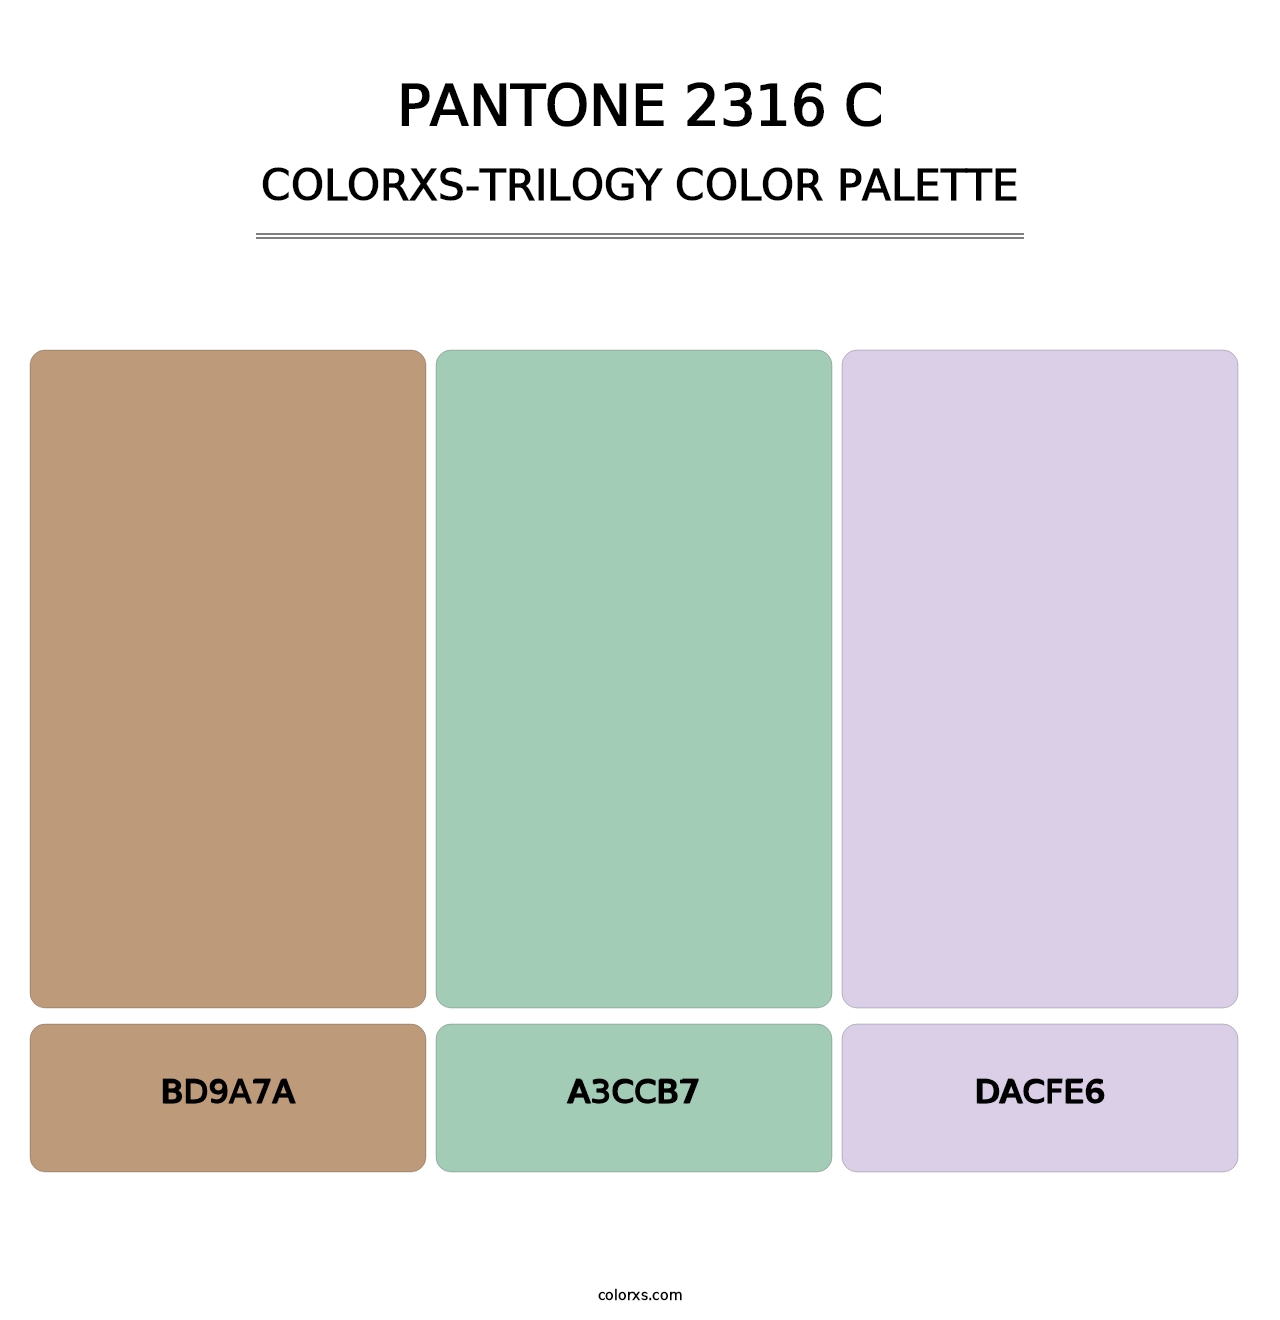 PANTONE 2316 C - Colorxs Trilogy Palette